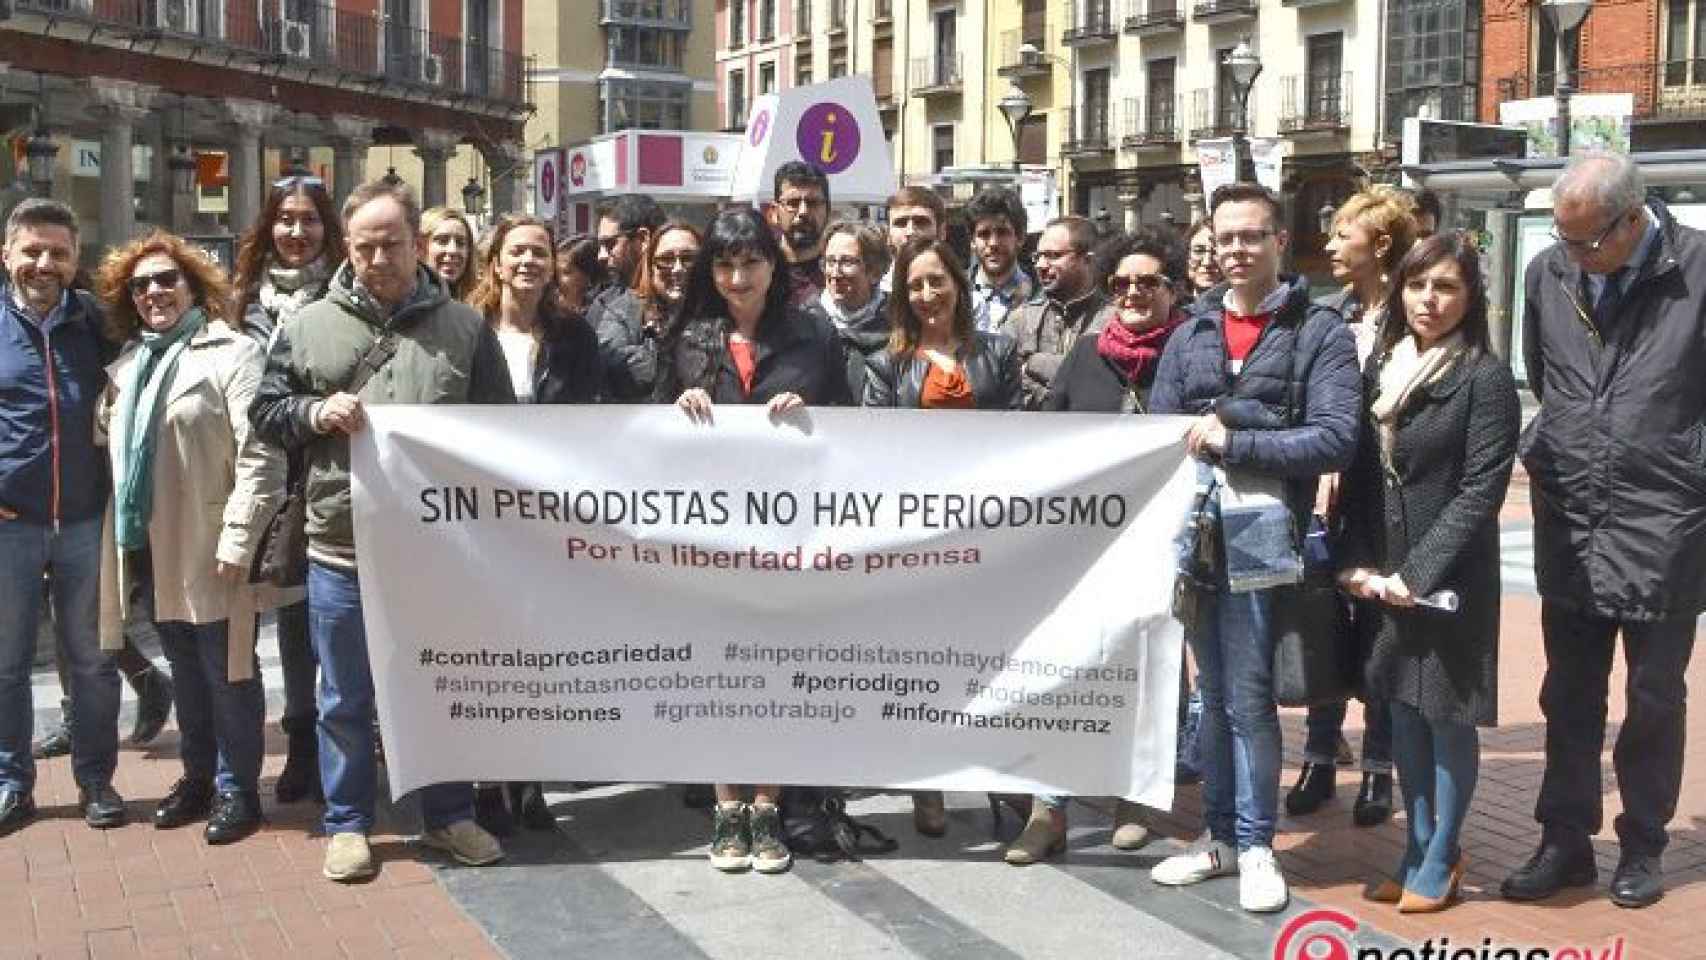 Valladolid-periodismo-democracia-libertad-expresion